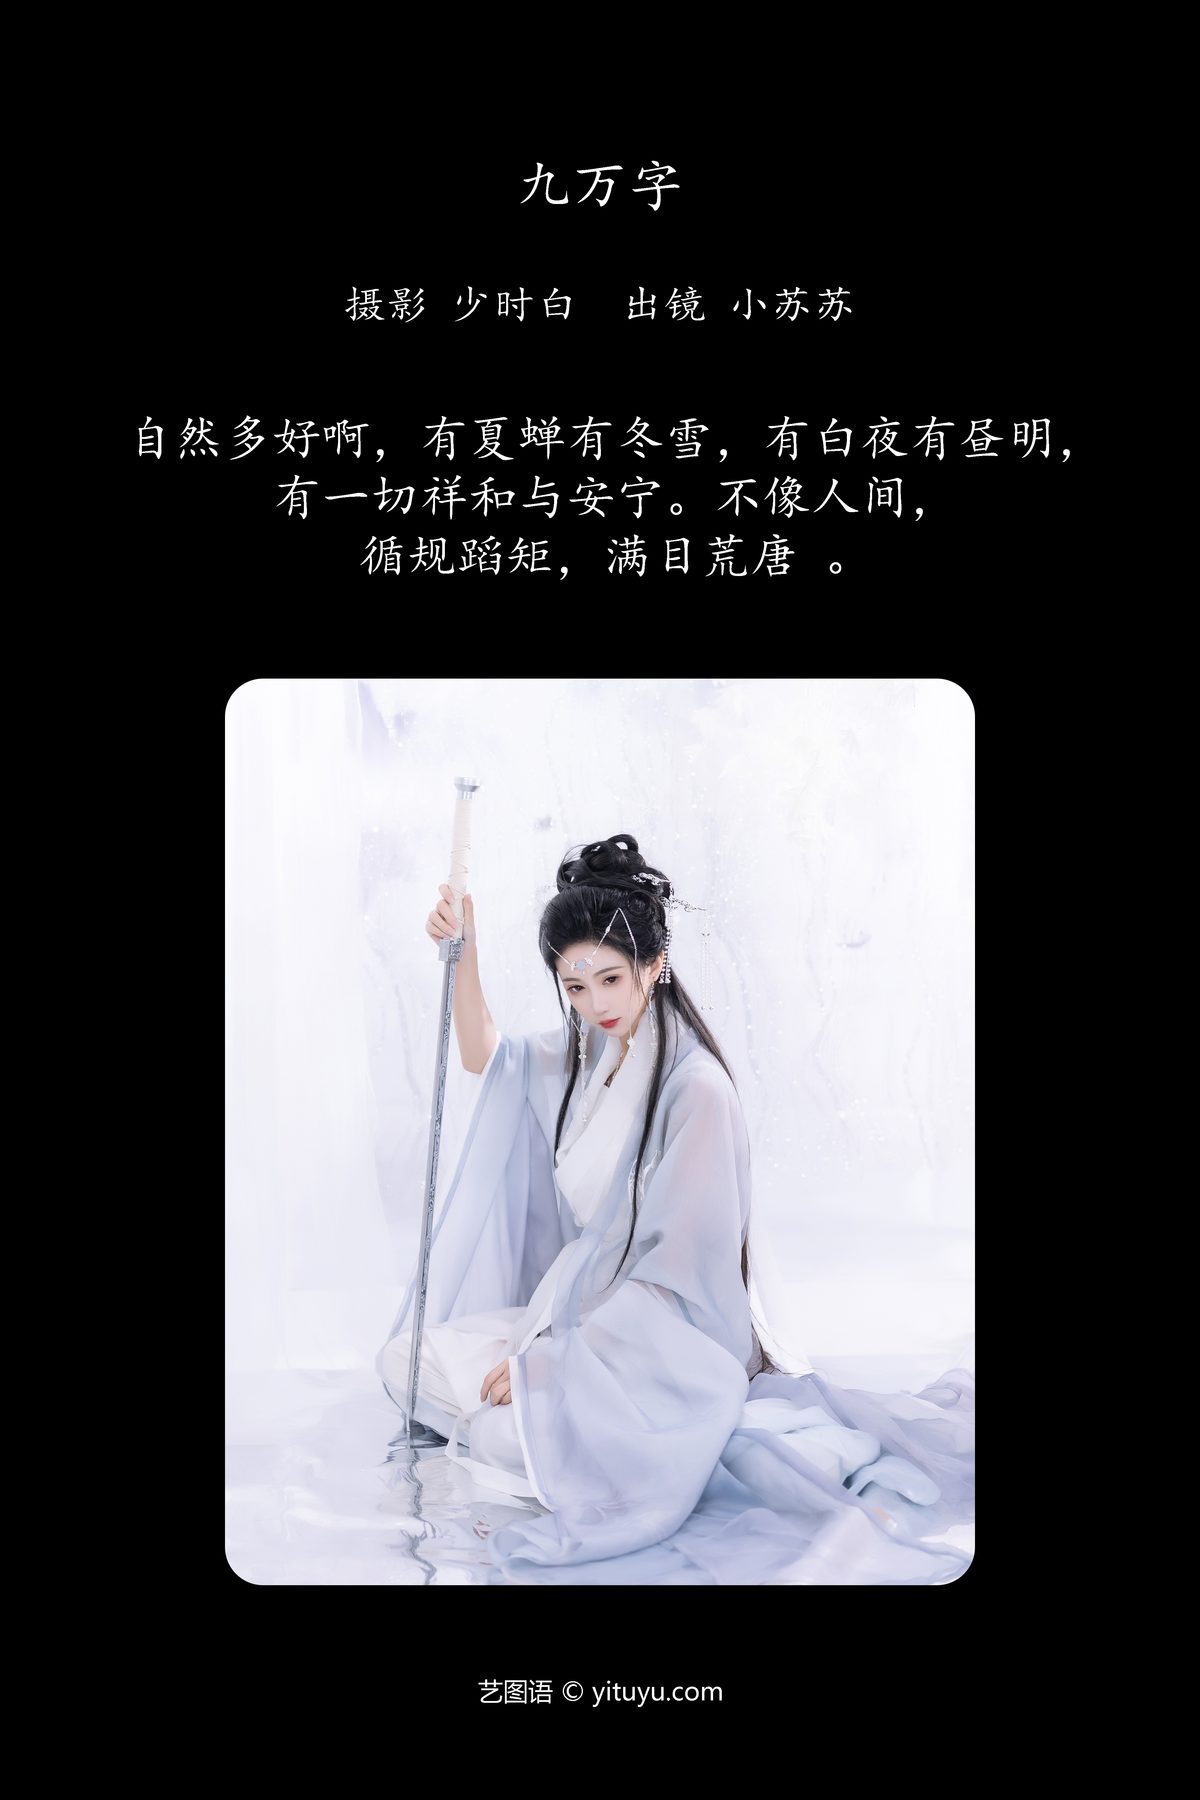 YiTuYu艺图语 Vol 6019 Qi Luo Sheng De Xiao Su Su 0002 5453805521.jpg